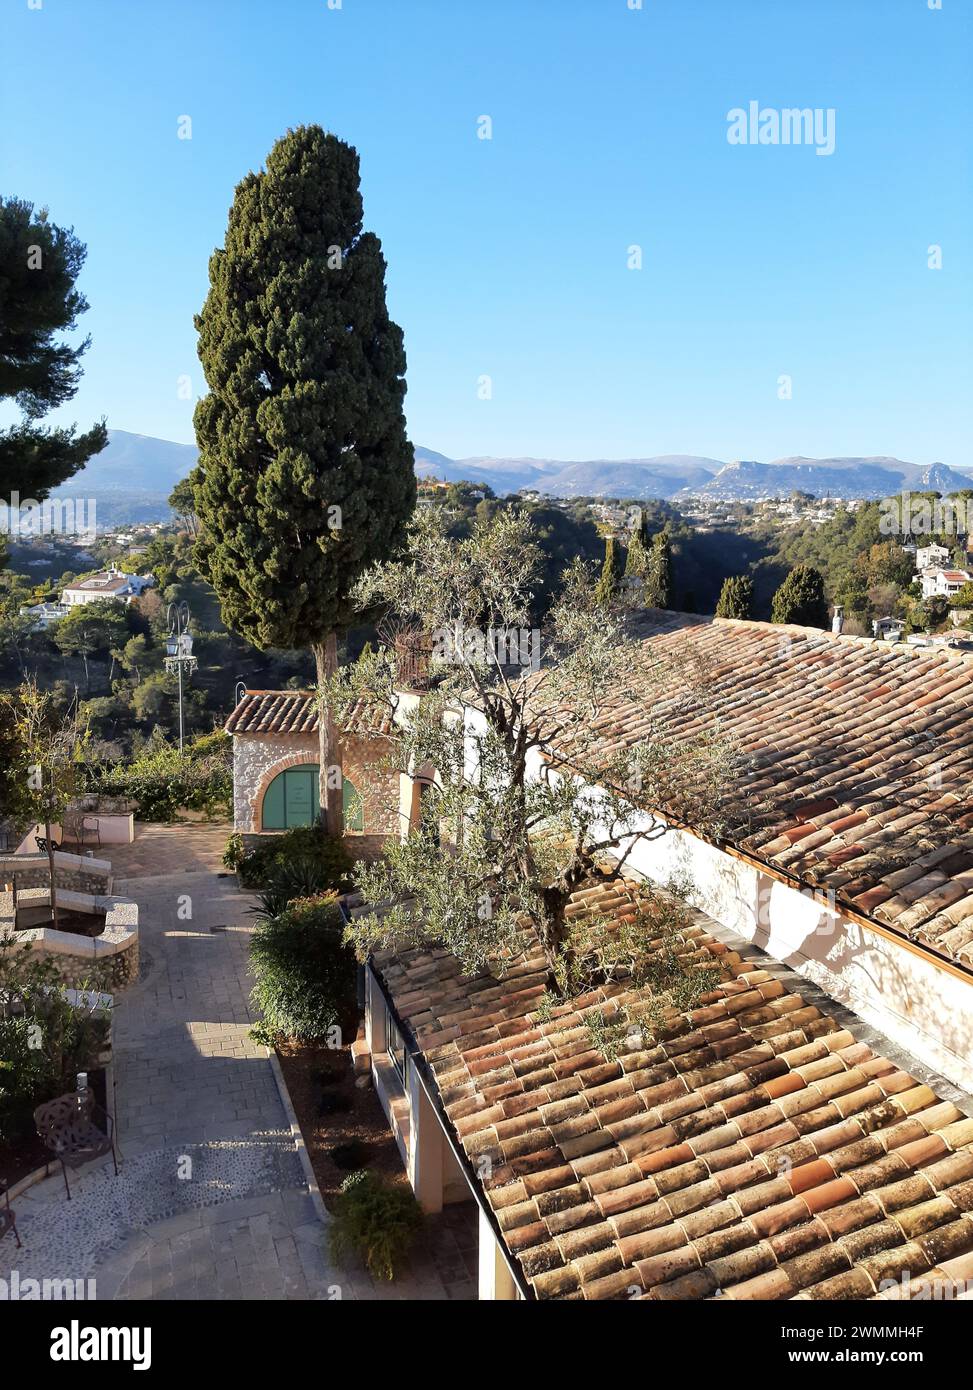 Olivenbaum wächst durch ein Terrakottadach in Haut de Cagnes, Cagnes sur Mer, französische Riviera. Antike, mittelalterliche, französische mediterrane Stadt Stockfoto